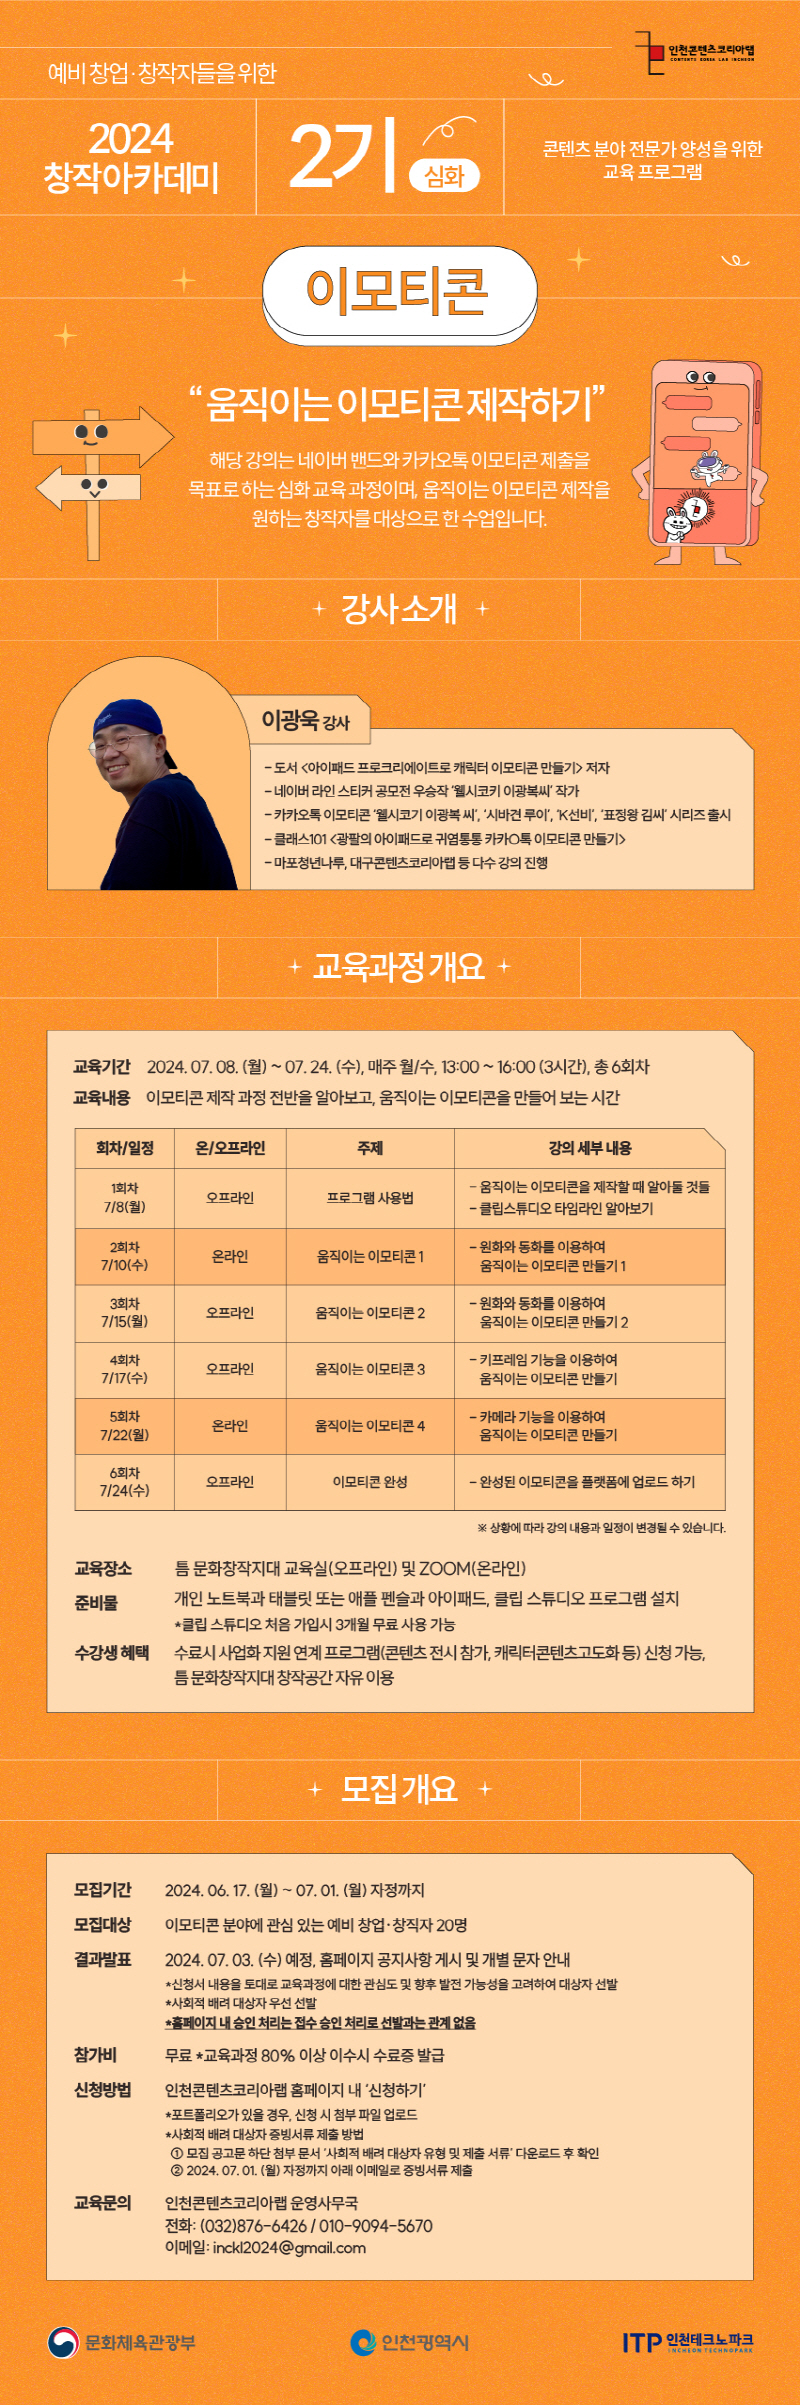 창작 아카데미 2기 – 이모티콘(심화과정) 수강생 모집